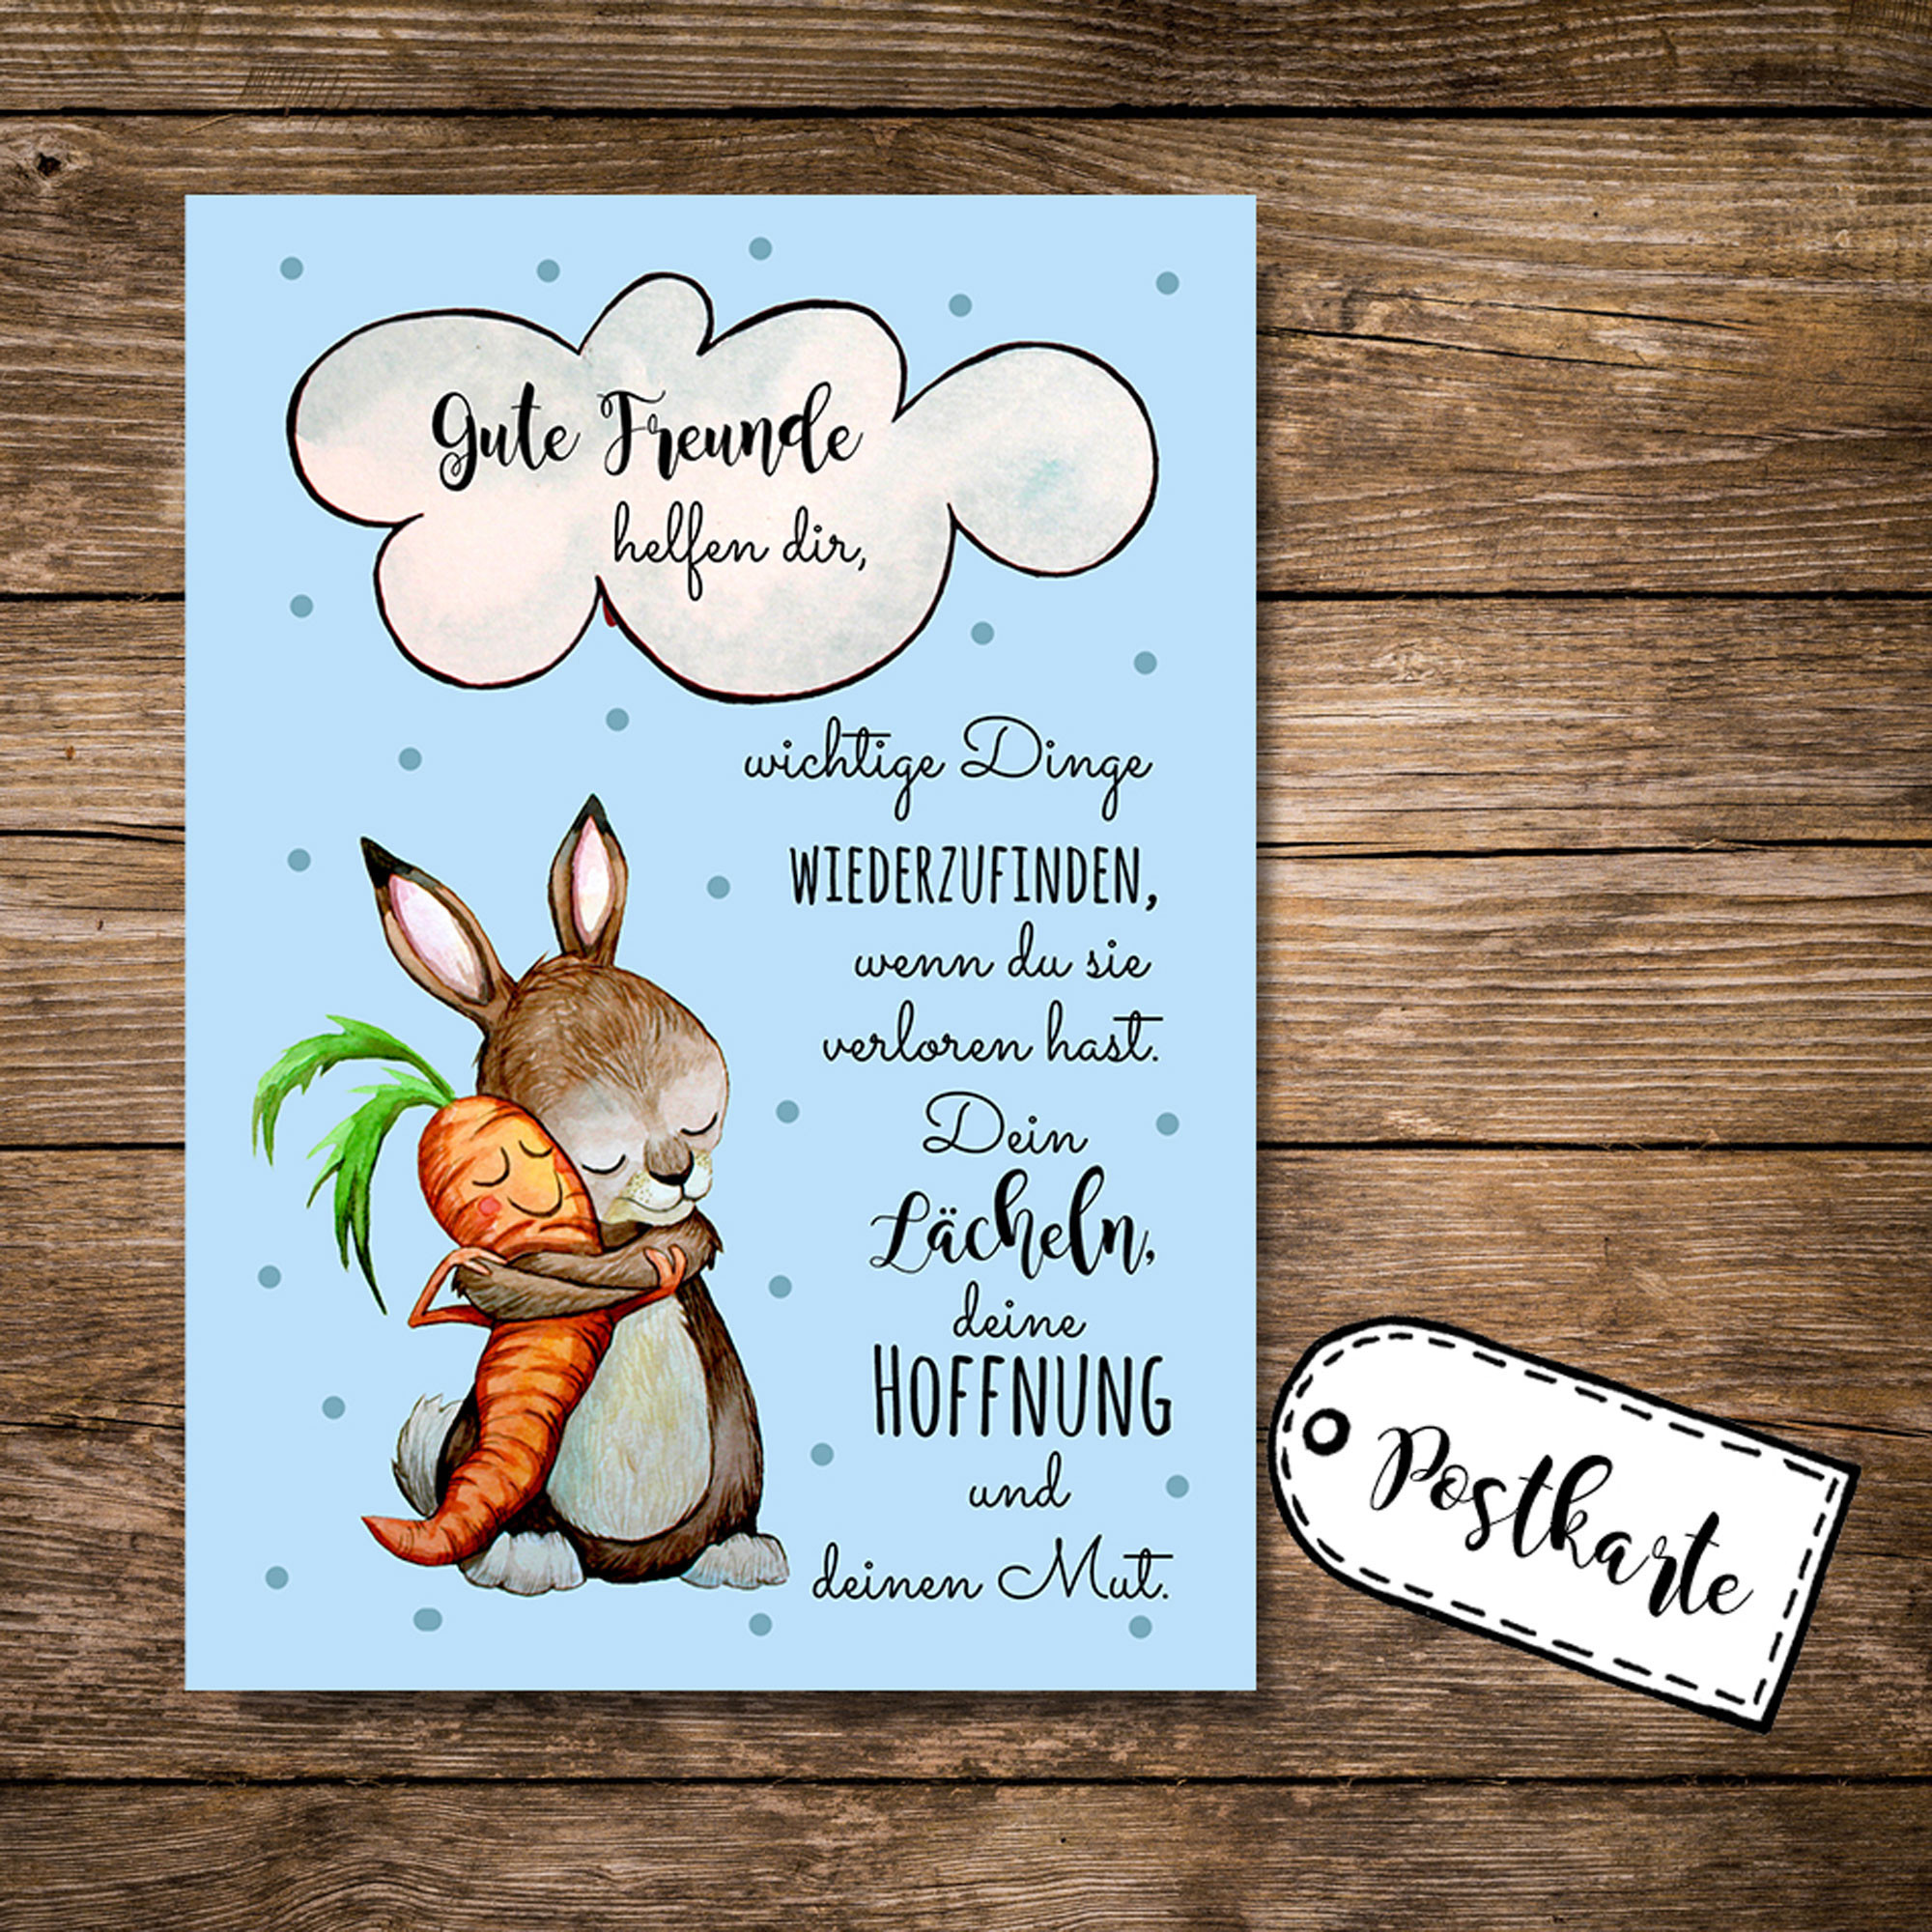 Geburtstagswünsche Für Gute Freunde
 A6 Postkarte Grußkarte Karte Print Illustration Hase und